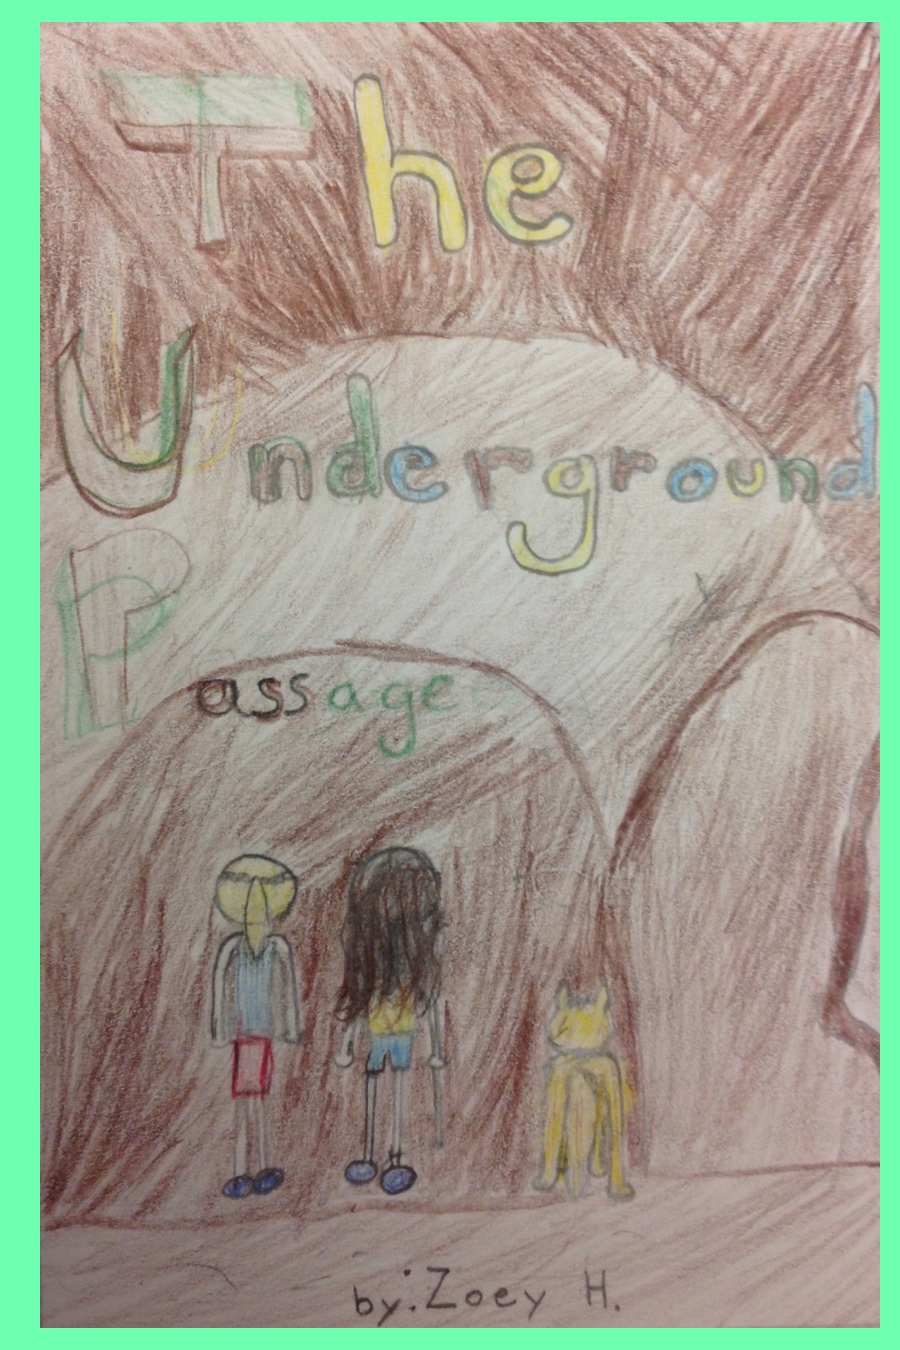 The Underground Passage by Zoey H